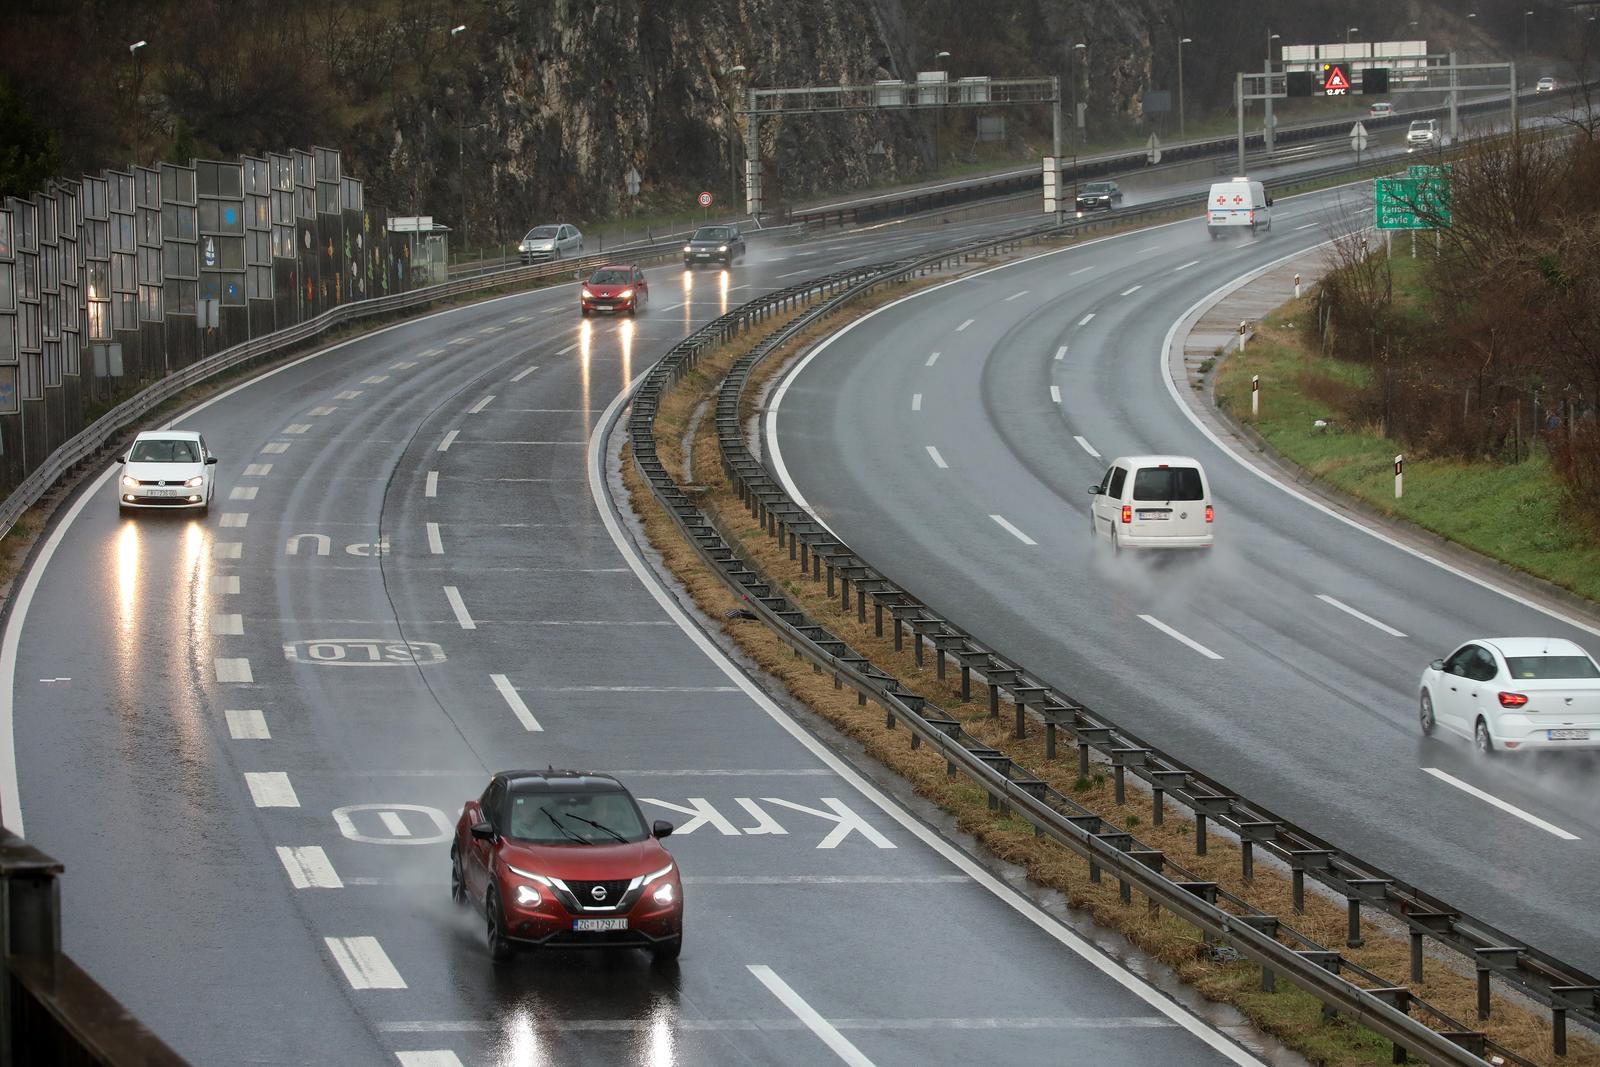 05.01.2024., Rijeka - Zbog kise su mokri i skliski kolnici te je potreban oprez u voznji na autocestama A6 i A7. Photo: Goran Kovacic/PIXSELL